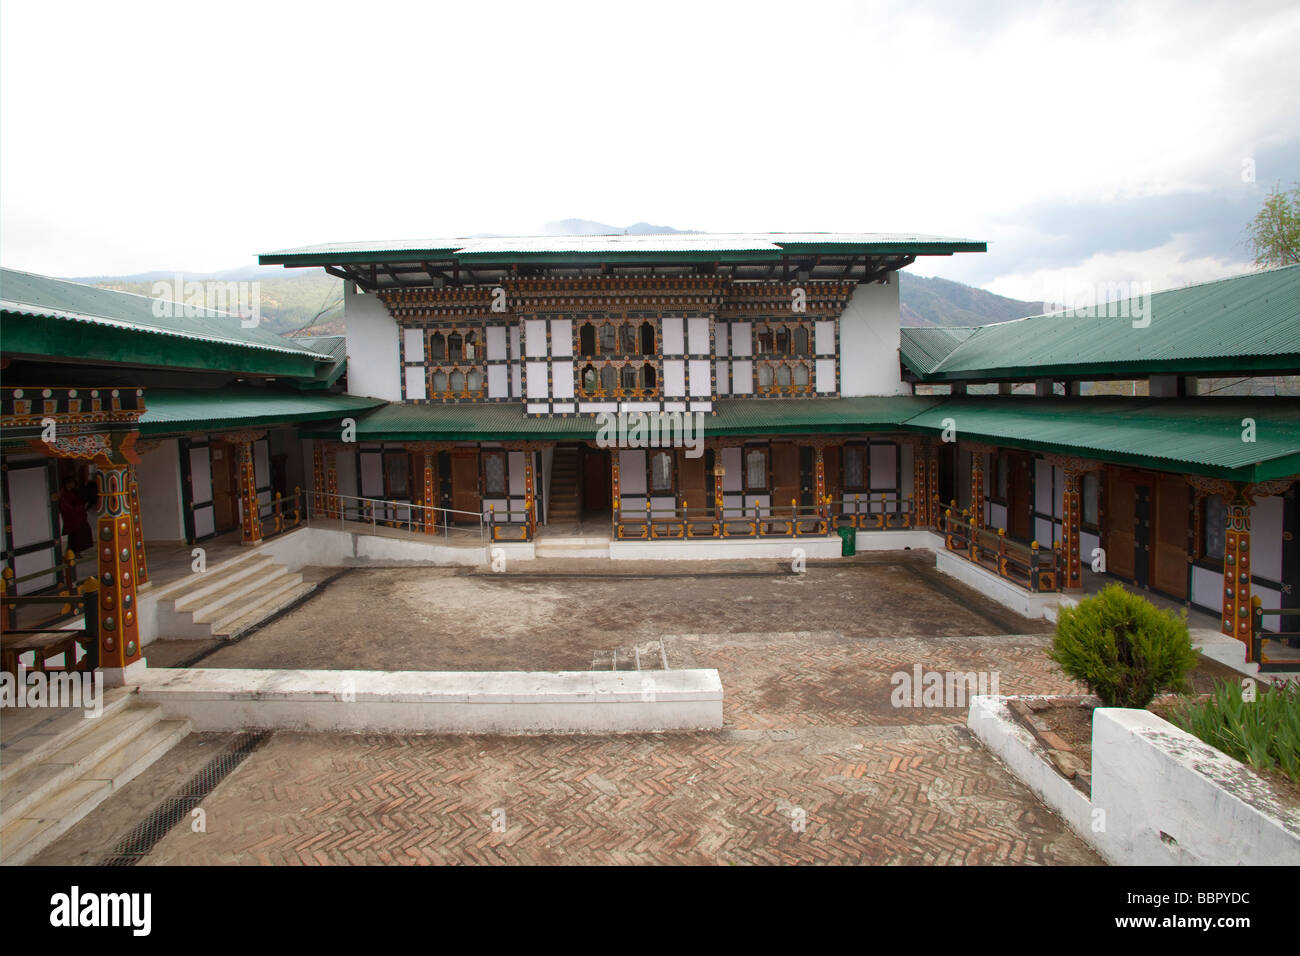 Bâtiment de l'université de l'hôpital général à Thimphu, Bhoutan 91135 Bhutan-Thimphu horizontale Banque D'Images